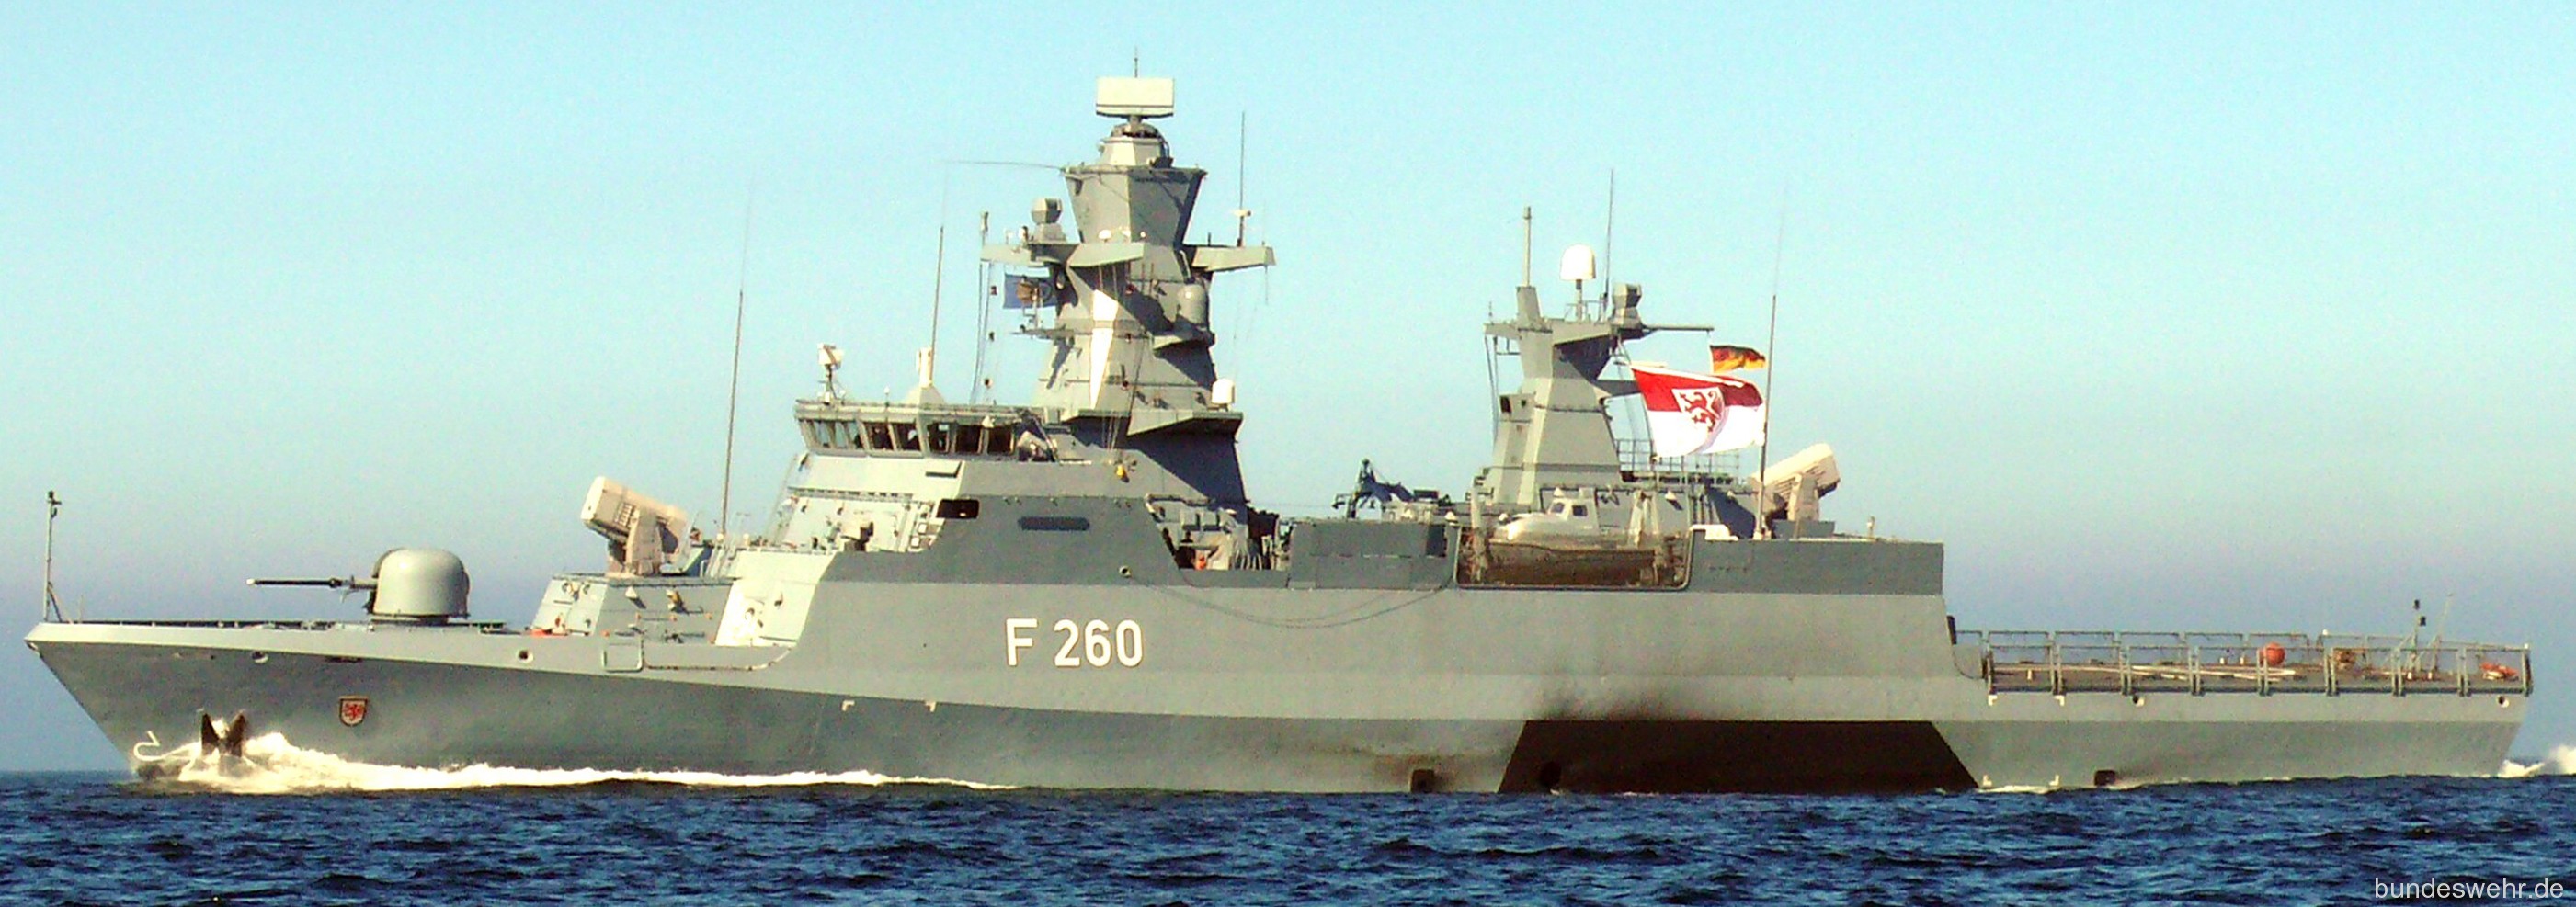 f-260 fgs braunschweig type k130 class corvette german navy 08